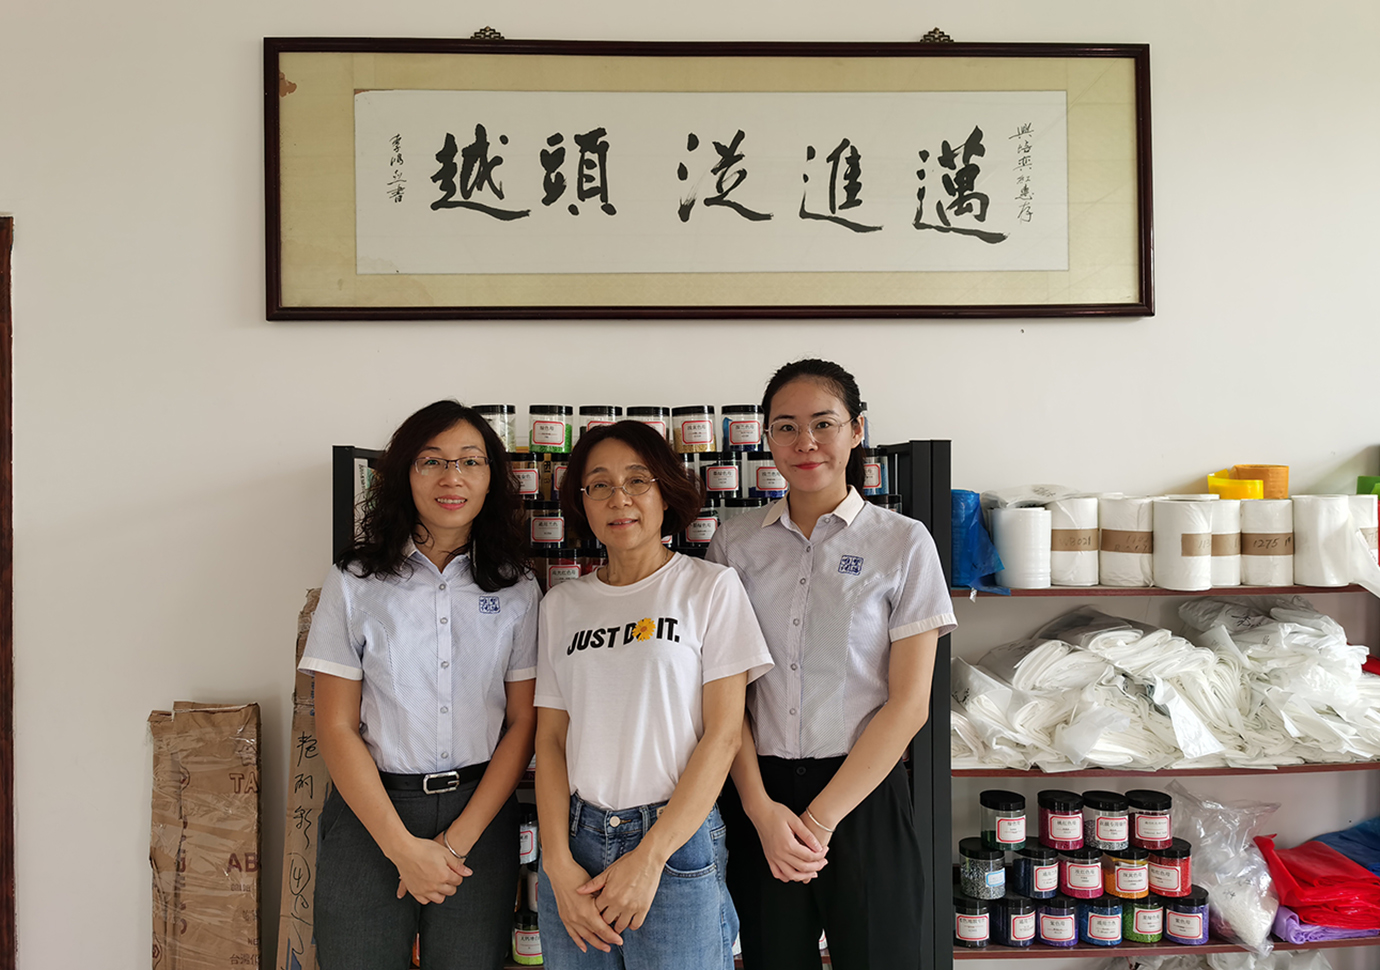 惠州市艳丽彩塑胶科技有限公司 (2)